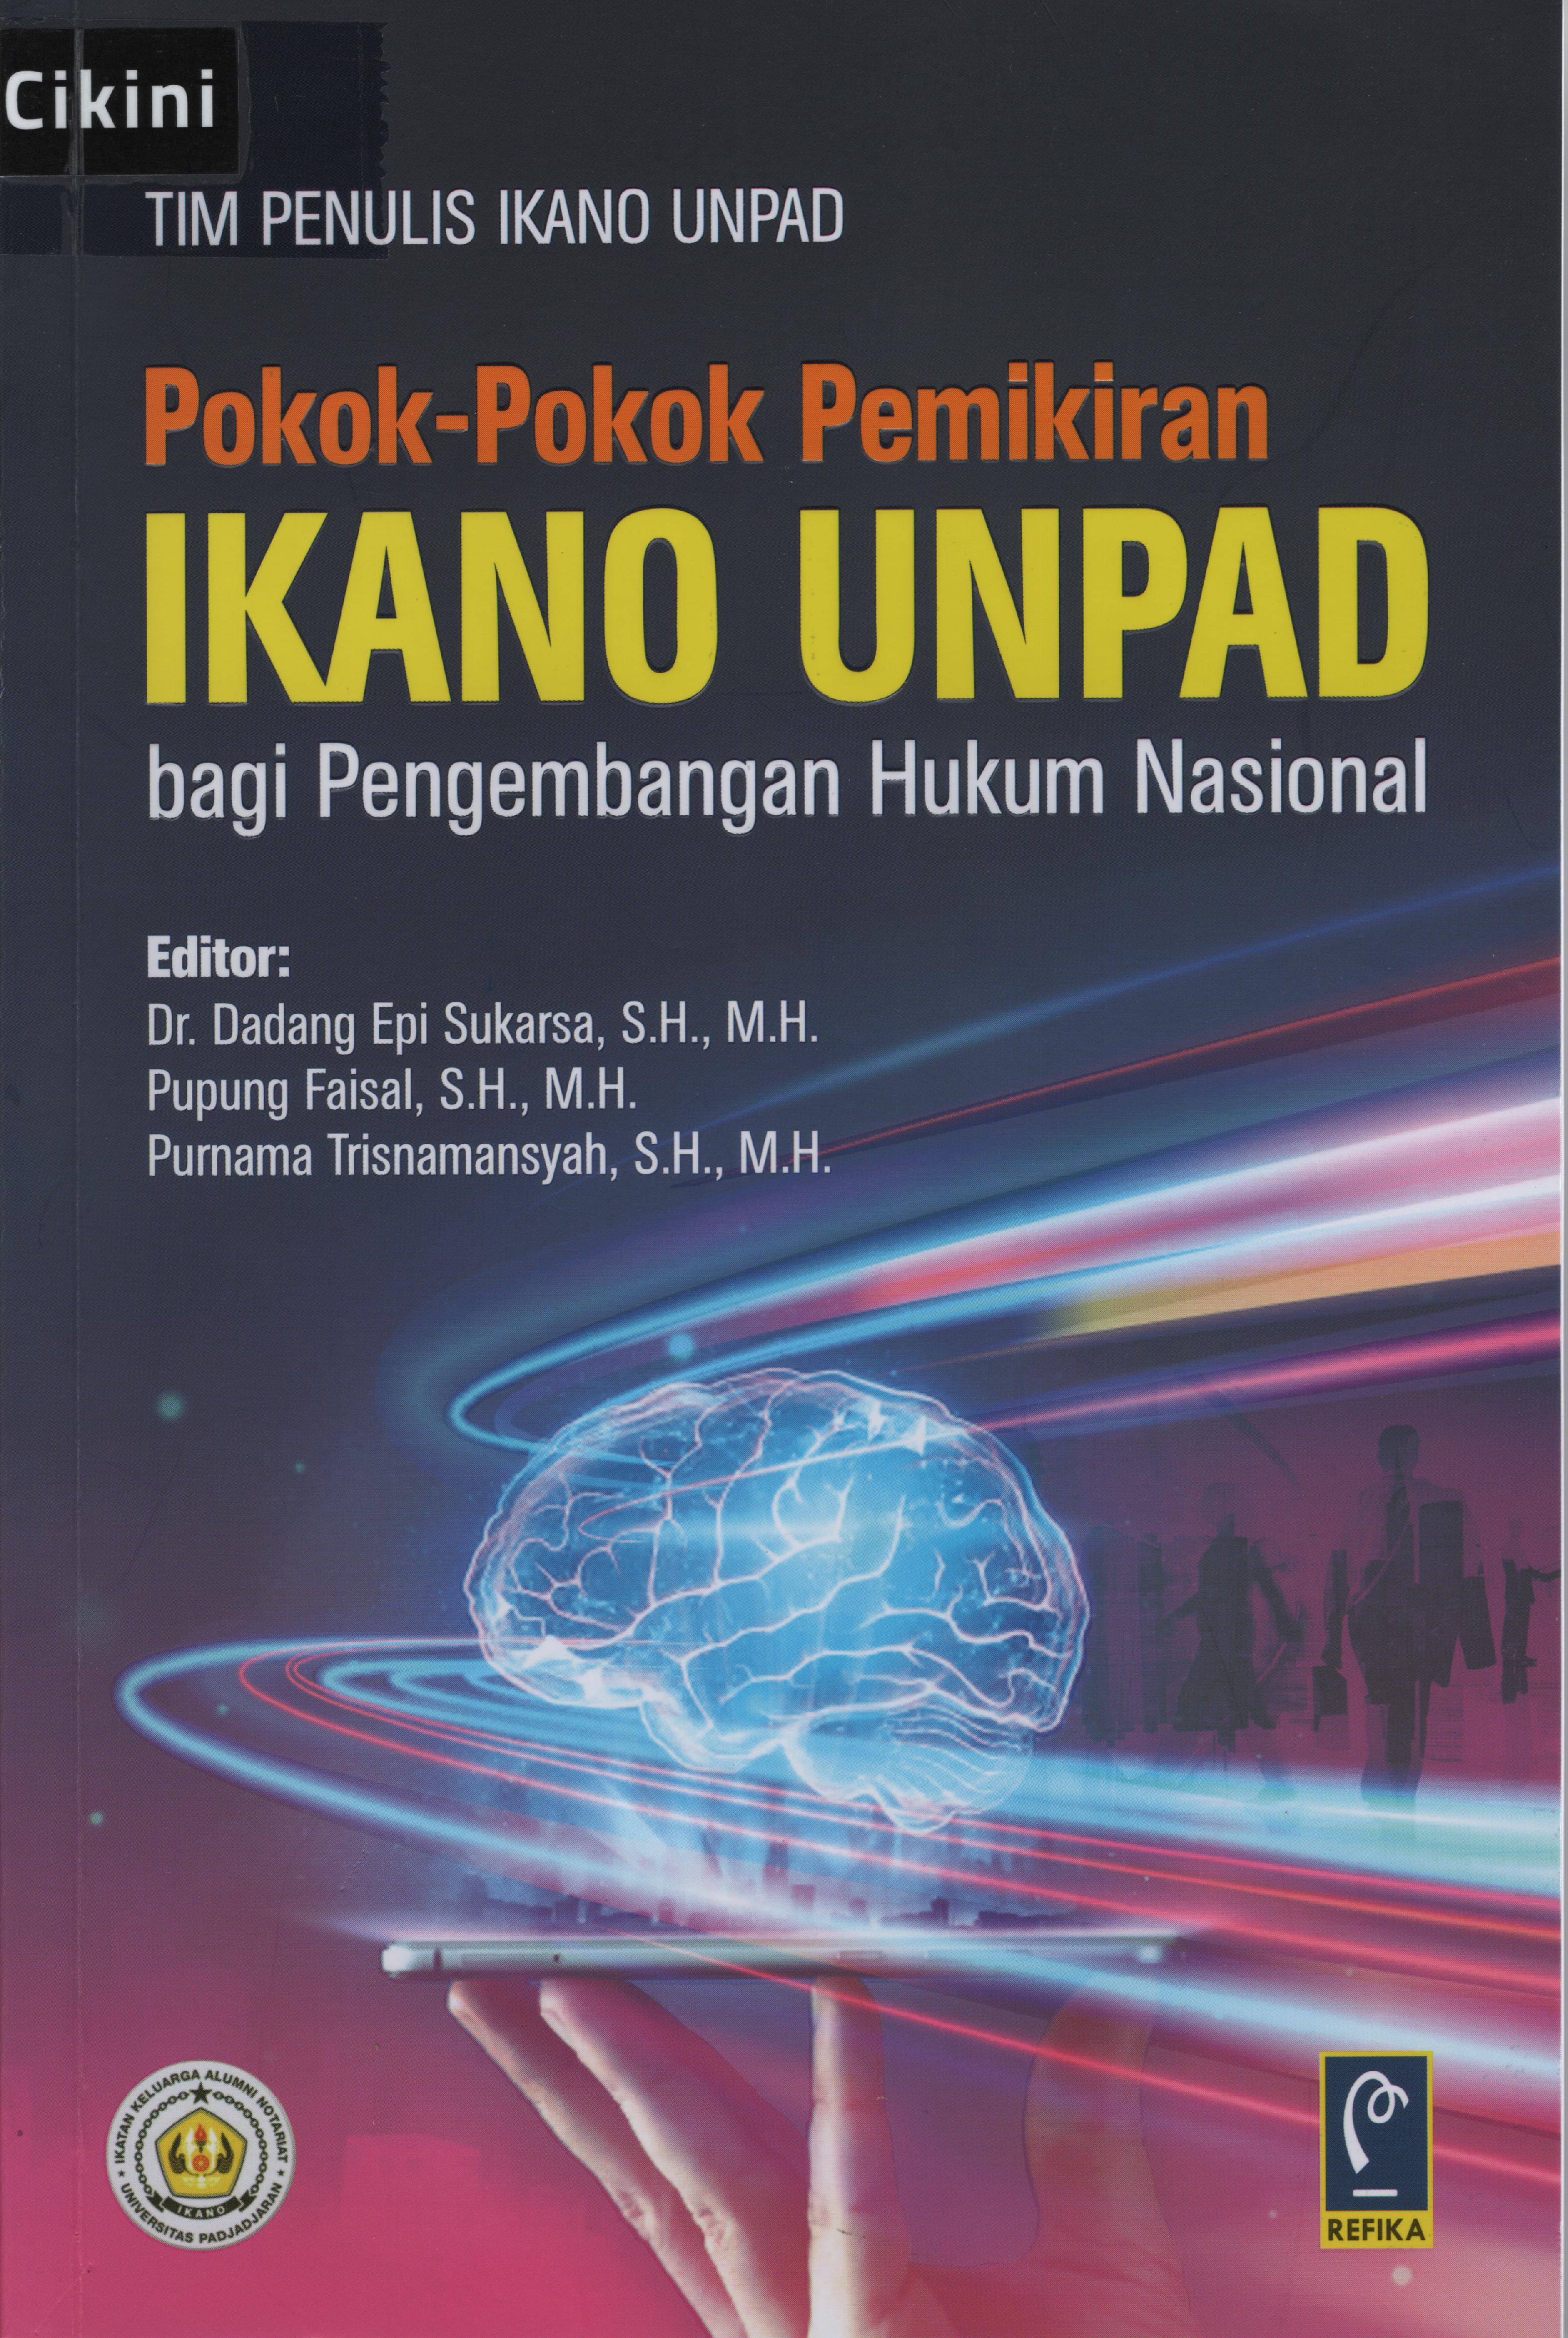 Pokok-pokok pemikiran IKANO Unpad bagi pengembangan hukum nasional